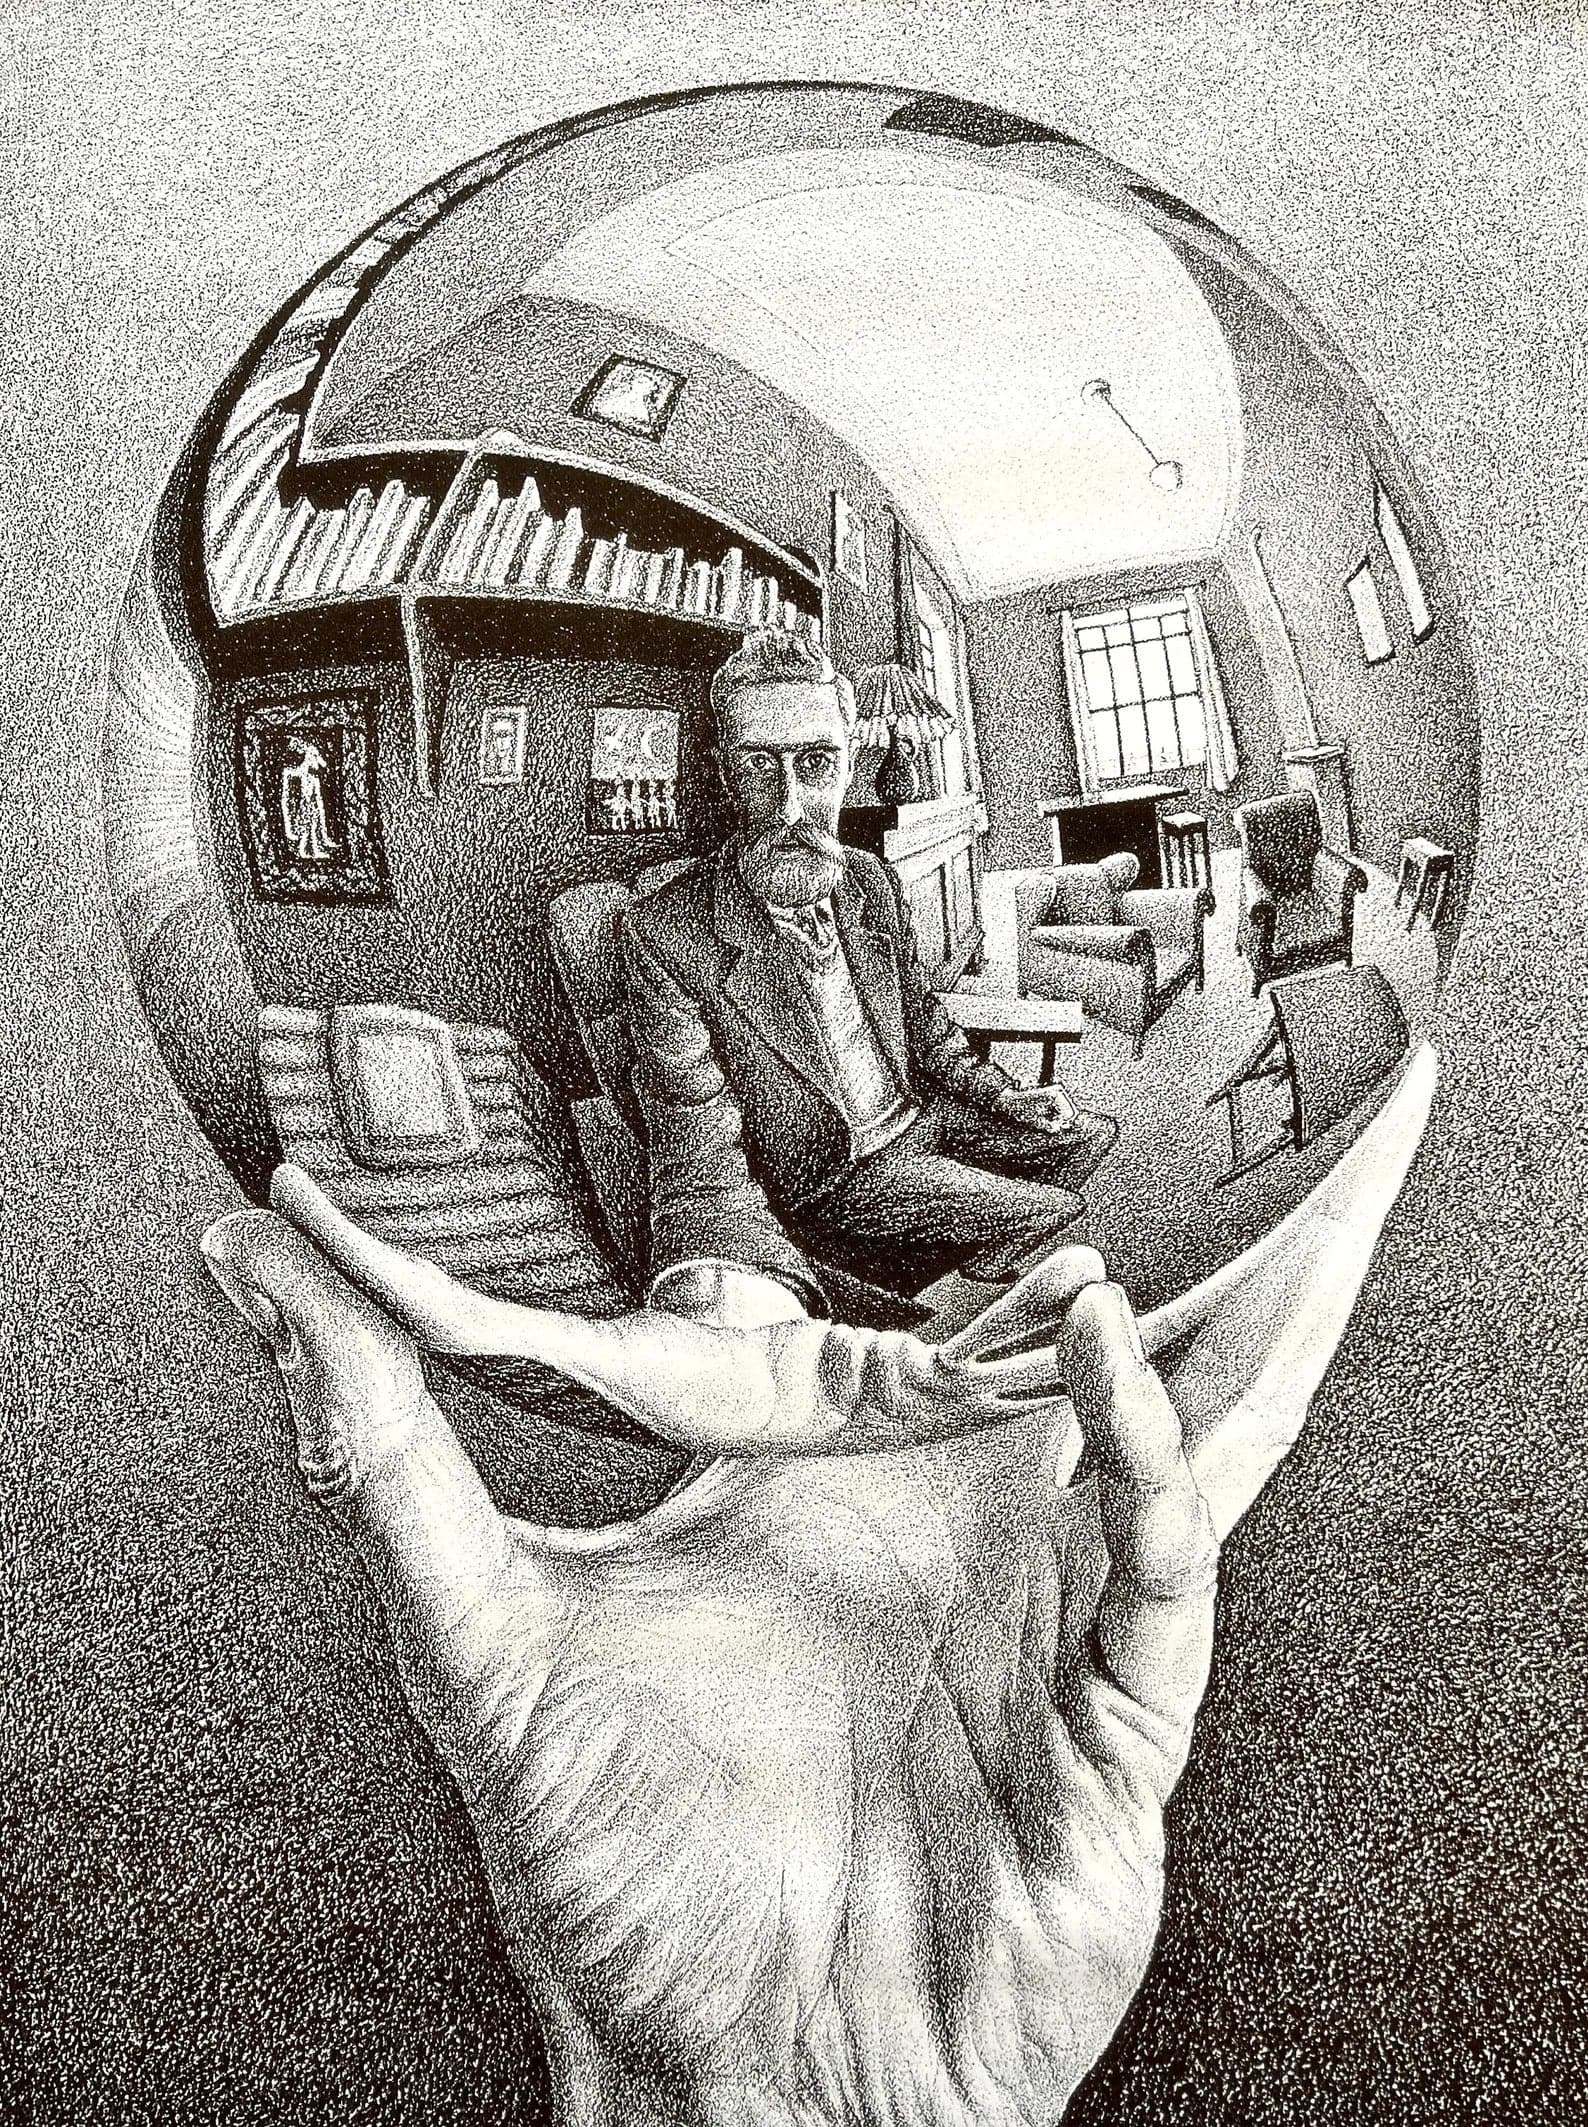 Framed 1 Panel - Art by Maurits Cornelis Escher